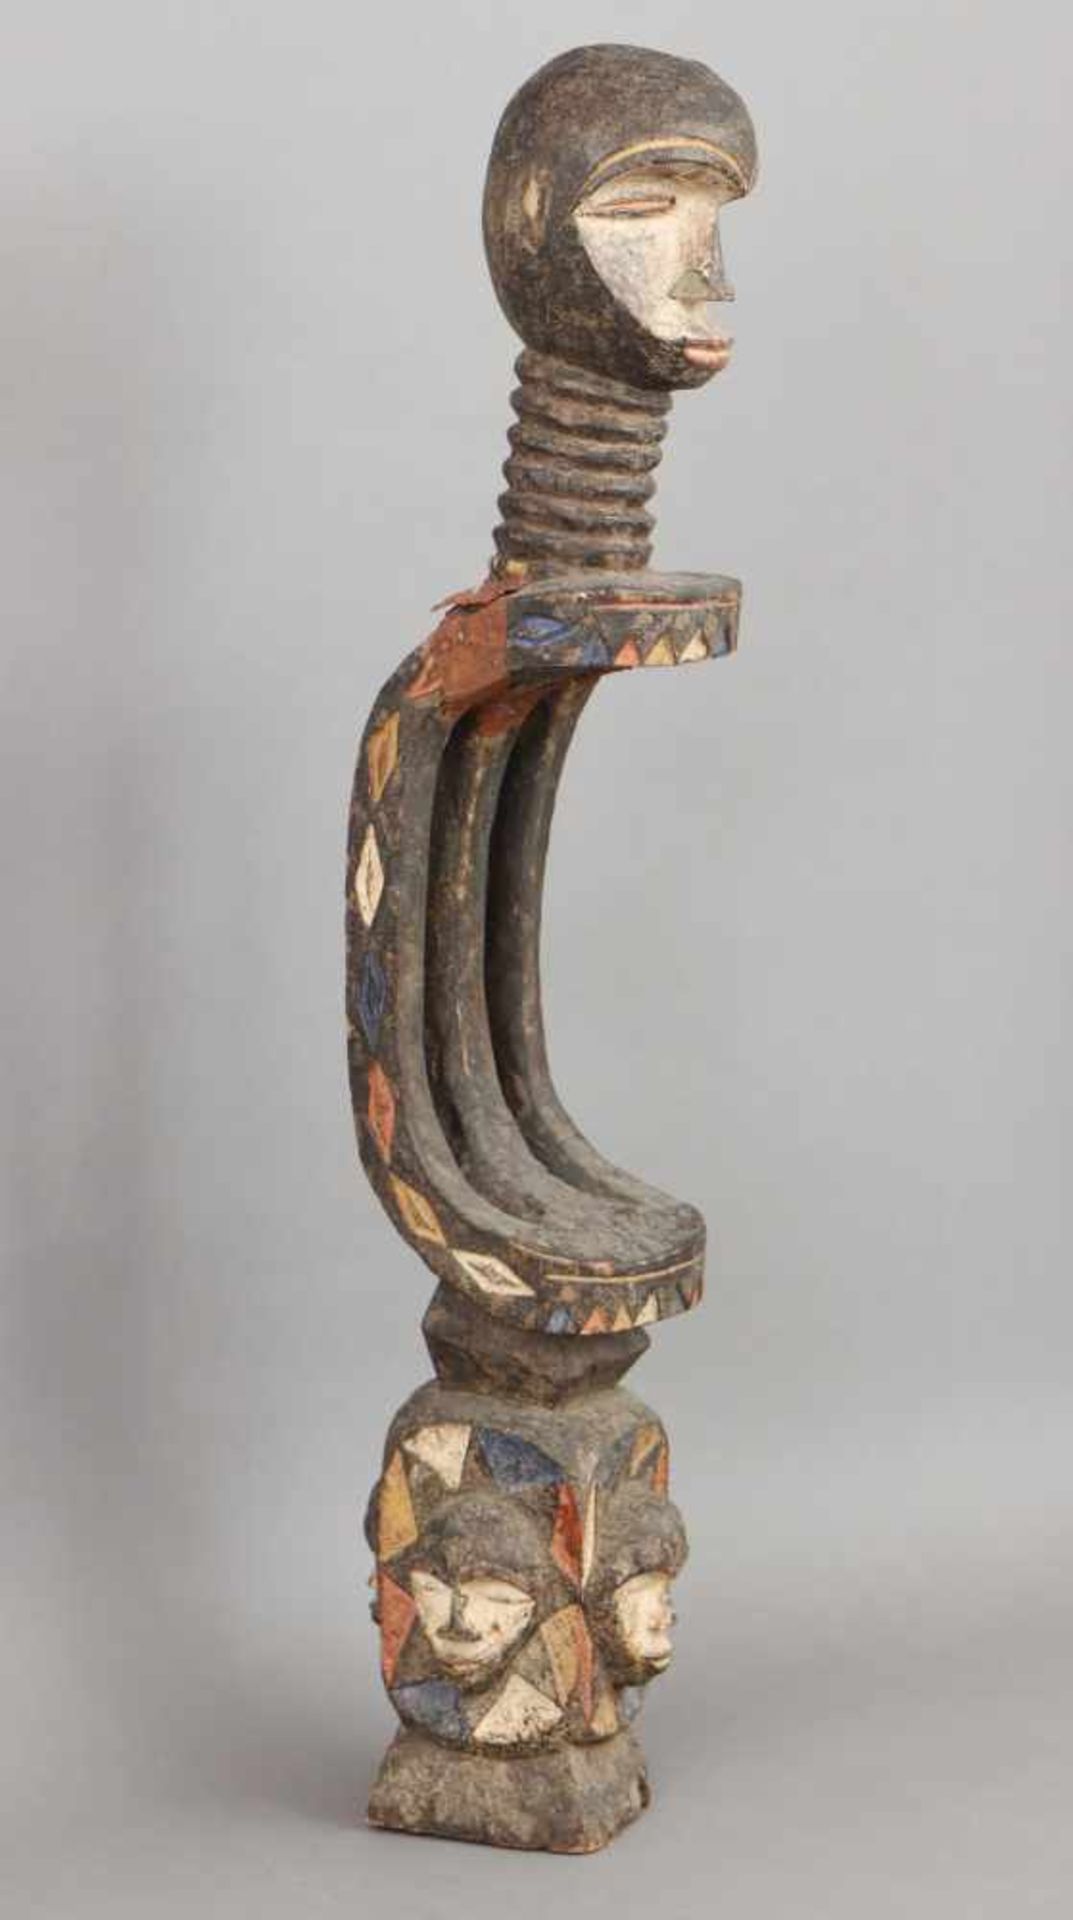 Afrikanische Ritual-/Ahnenfigur Holz, geschnitzt und geschwärzt, in Partien rot-weiß (Kaolin) - Image 2 of 4